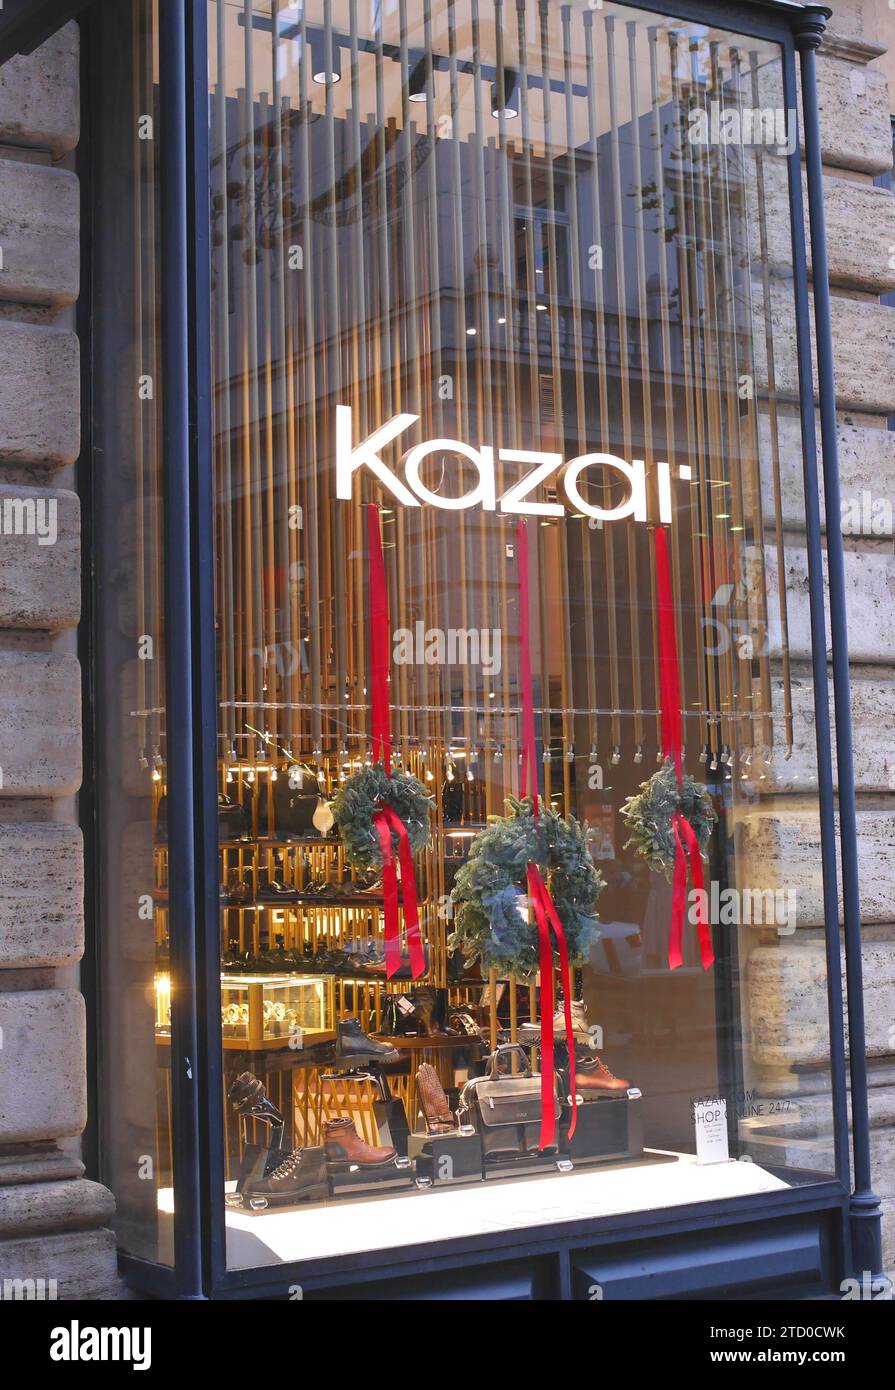 Kazar magasin de chaussures de luxe et de maroquinerie de luxe, saison de Noël, Vaci utca, Budapest, Hongrie Banque D'Images